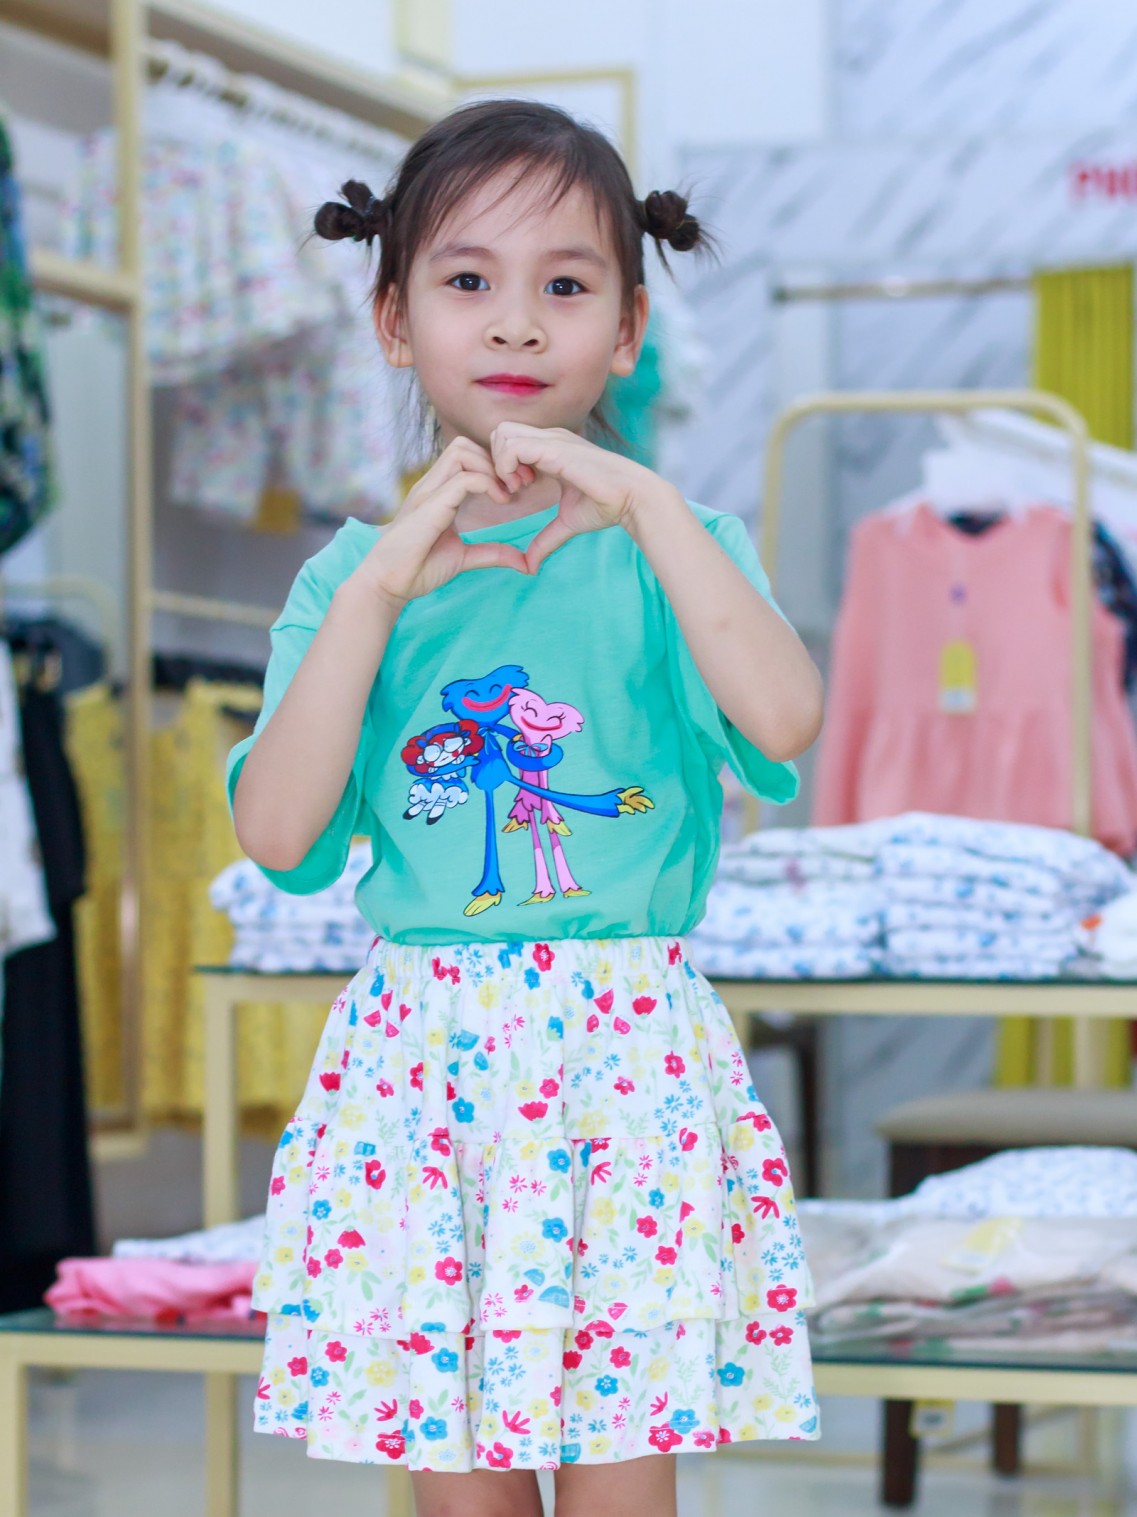 Dịch vụ chụp ảnh quần áo trẻ em đẹp rẻ chất lượng top 1 Hà Nội